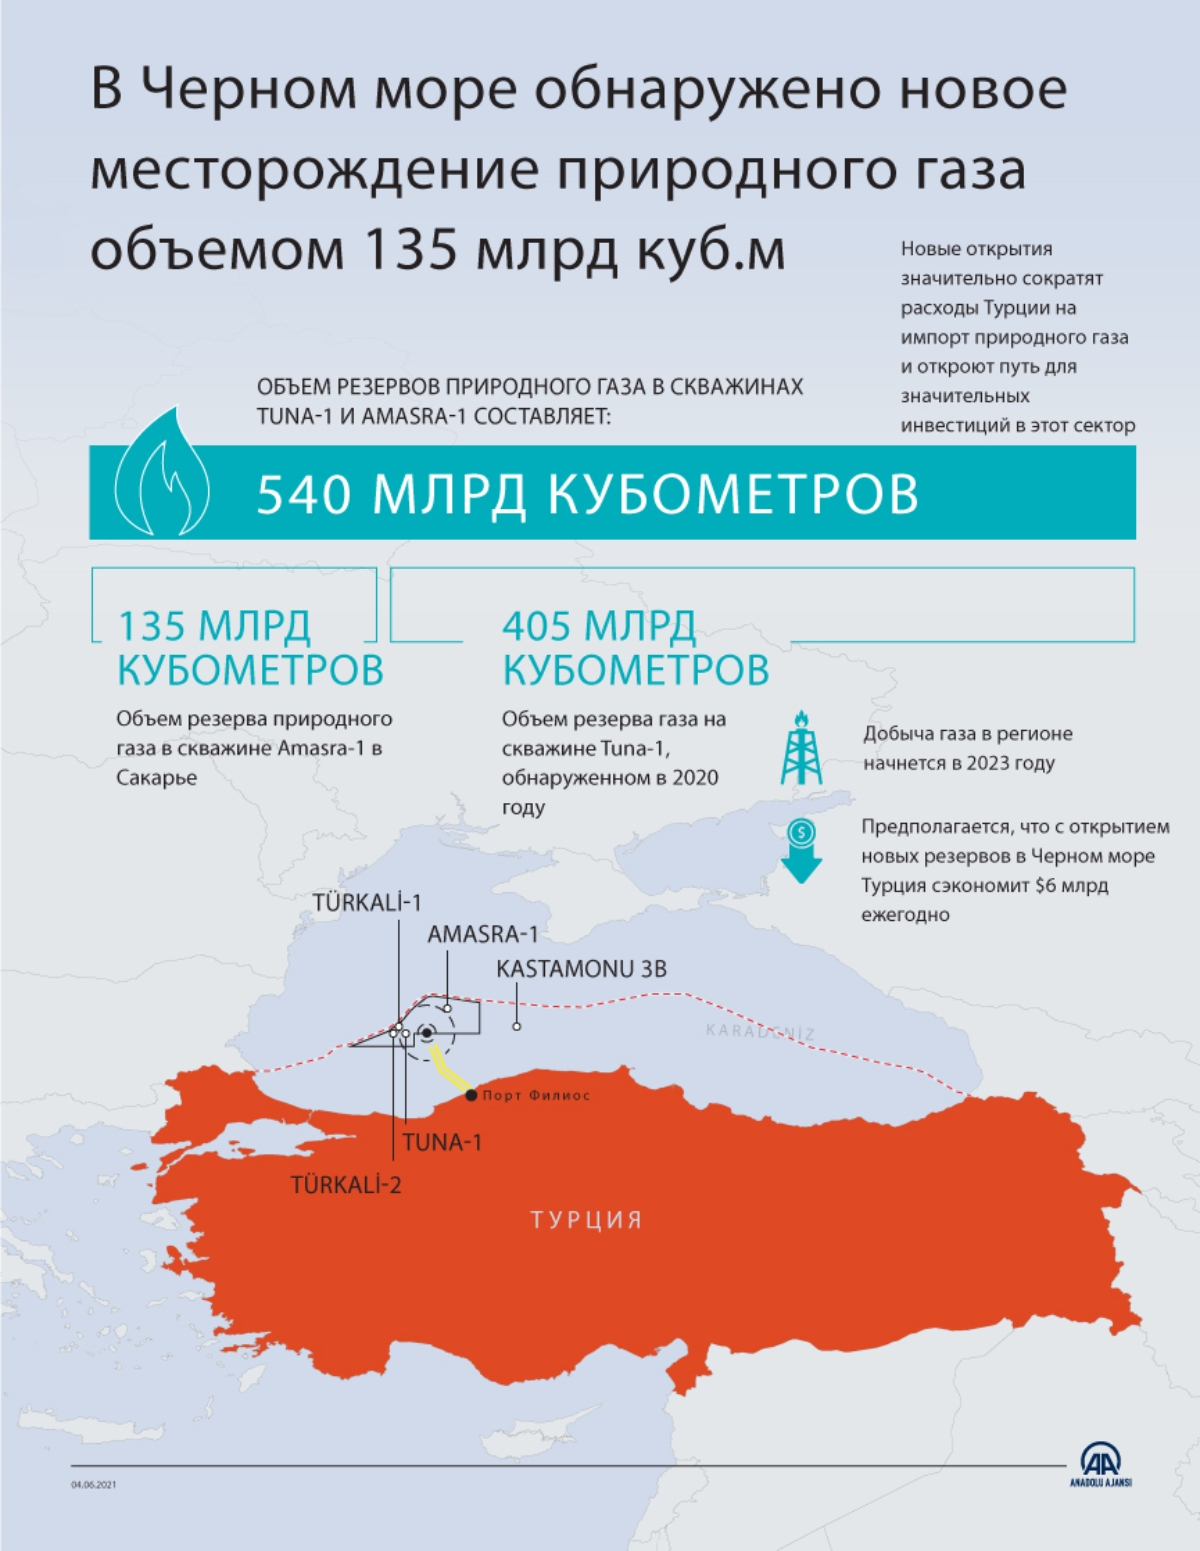 В Черном море обнаружено новое месторождение природного газа объемом 135 млрд куб.м